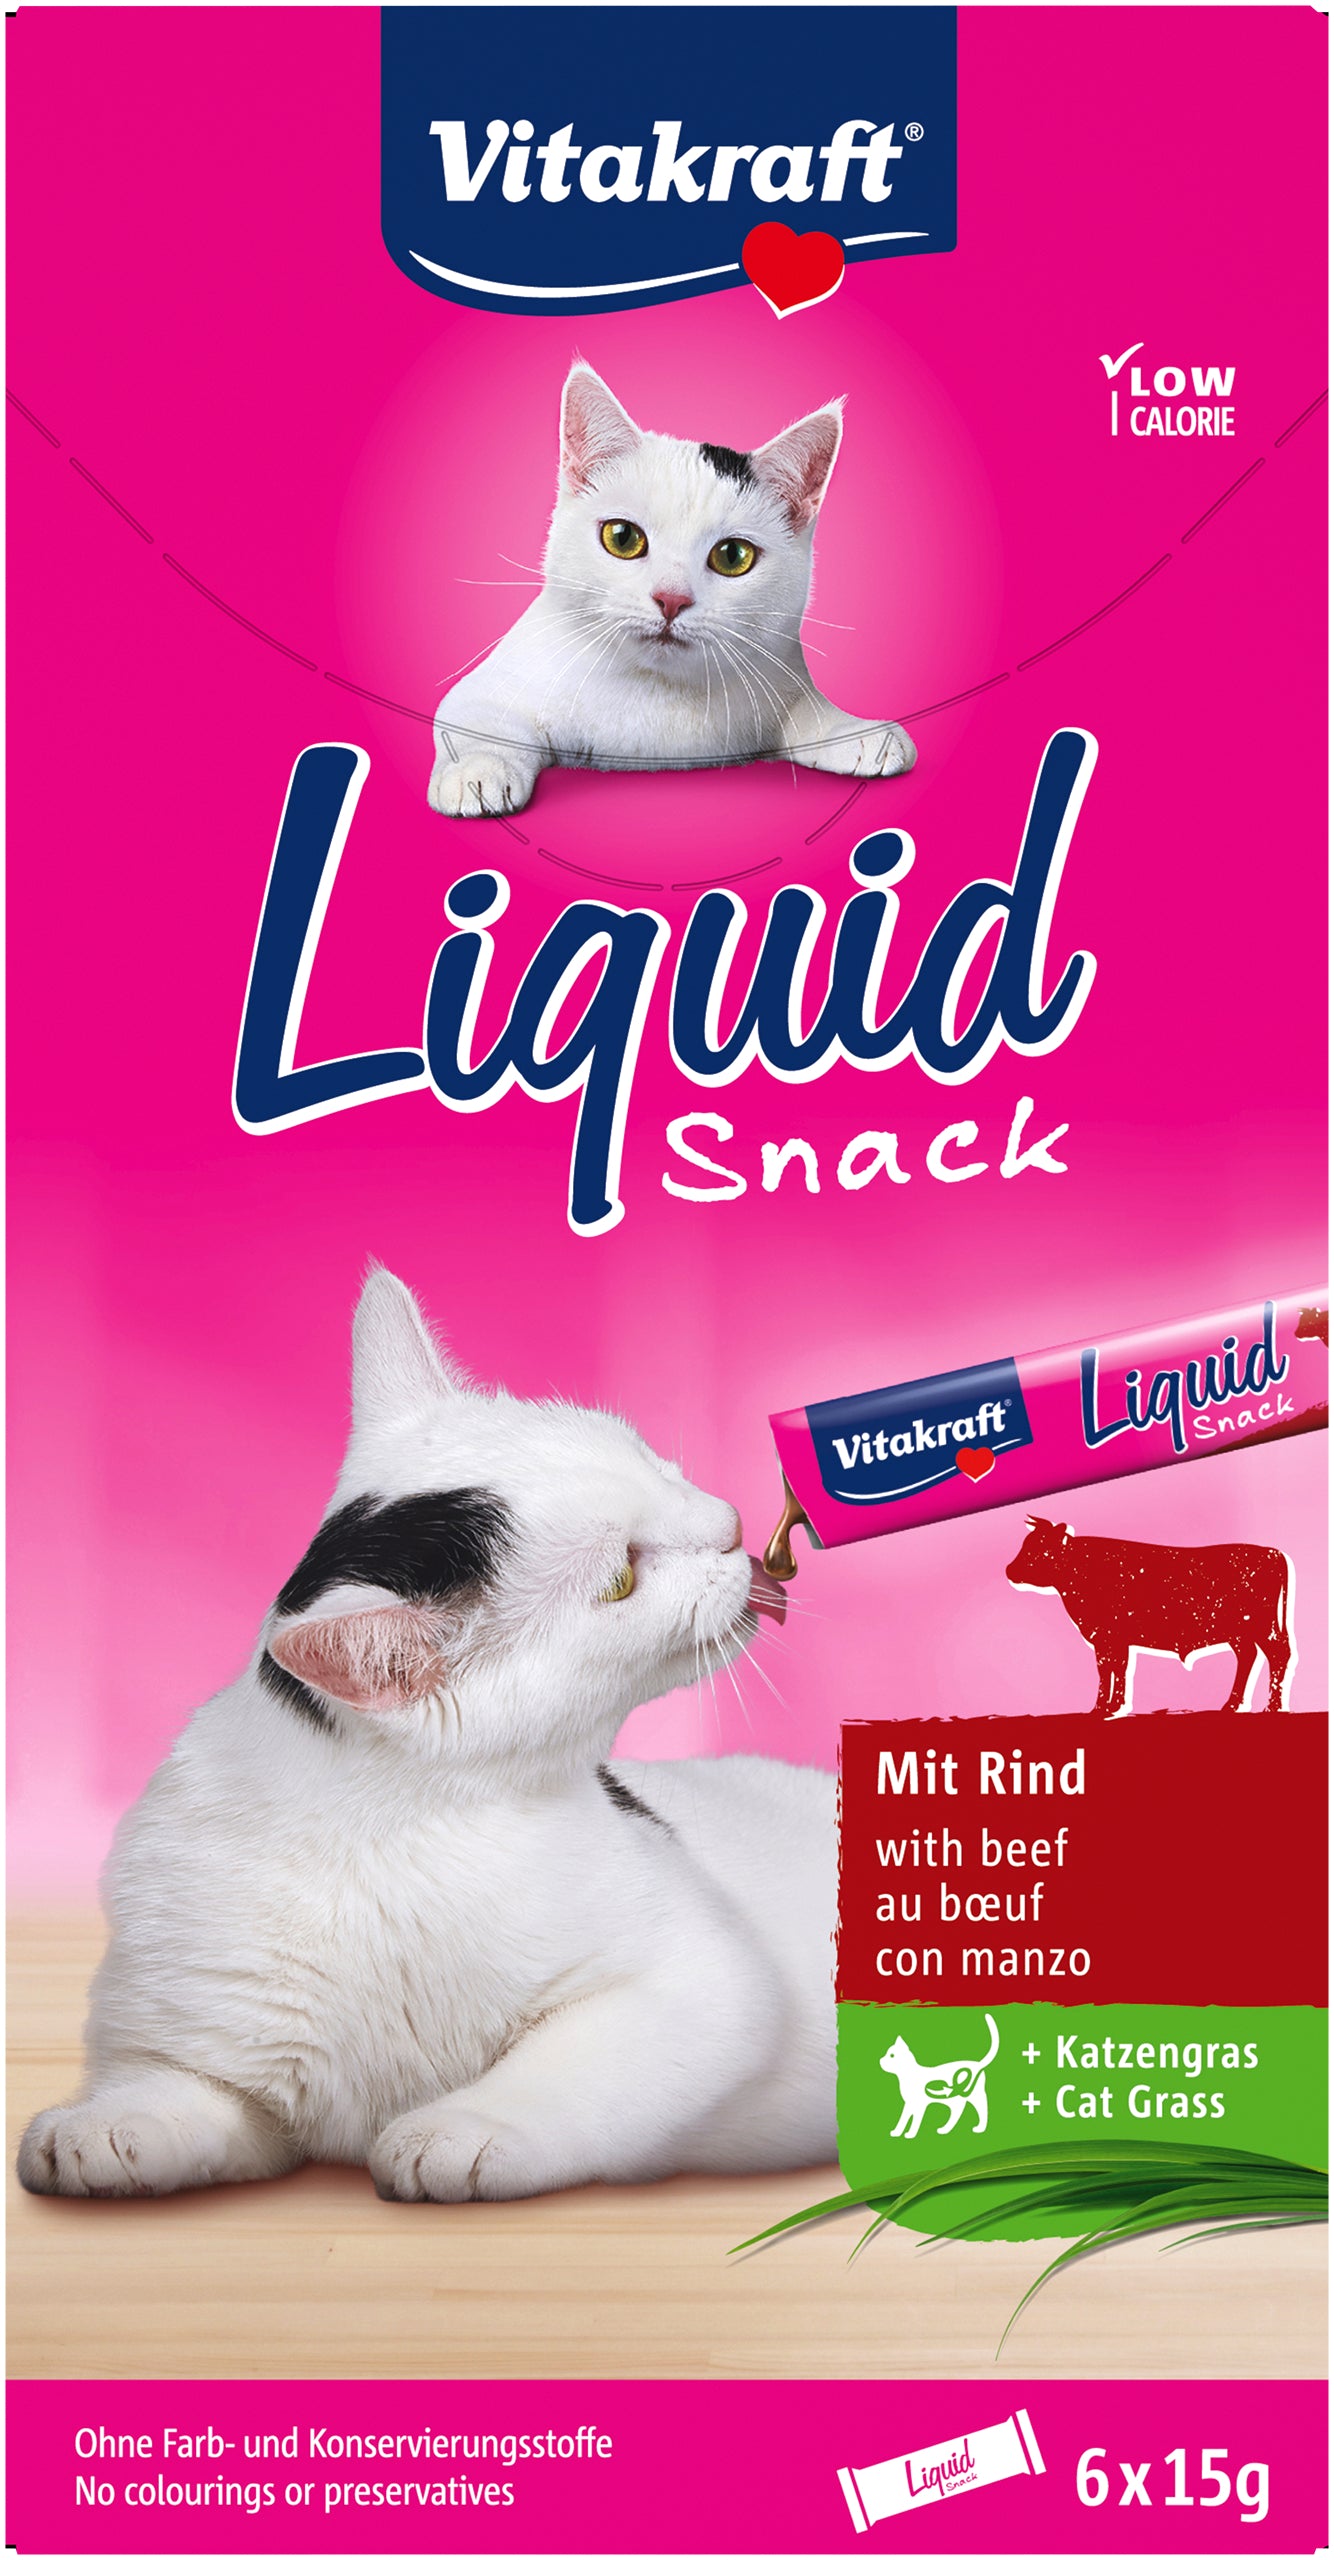 Billede af Vitakraft Liquid Snack med okse, inulin og kattegræs hos Petpower.dk